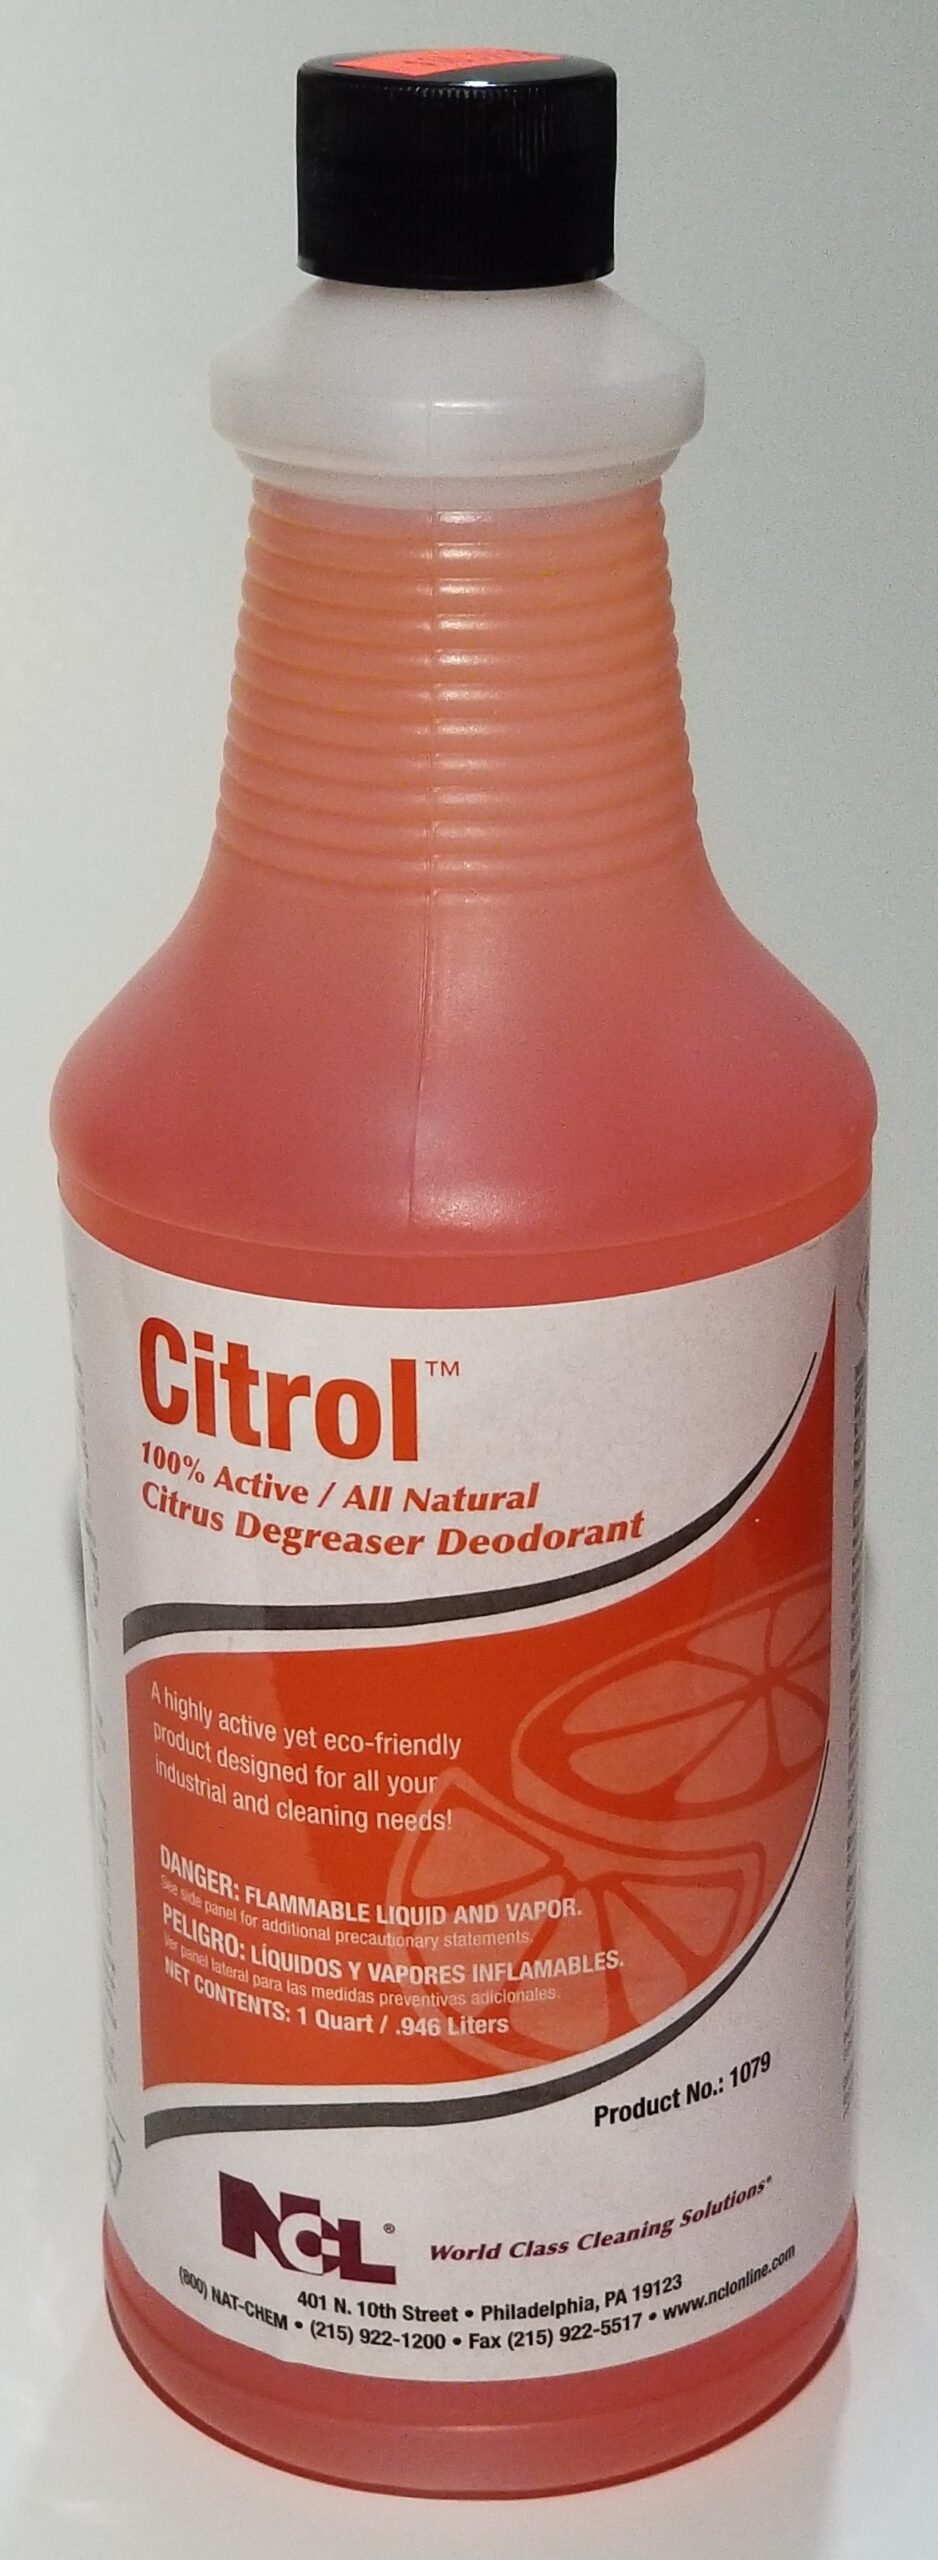 kruipen kant katje Citrol Citrus Degreaser Deodorant Qt - A1 Janitorial Supply